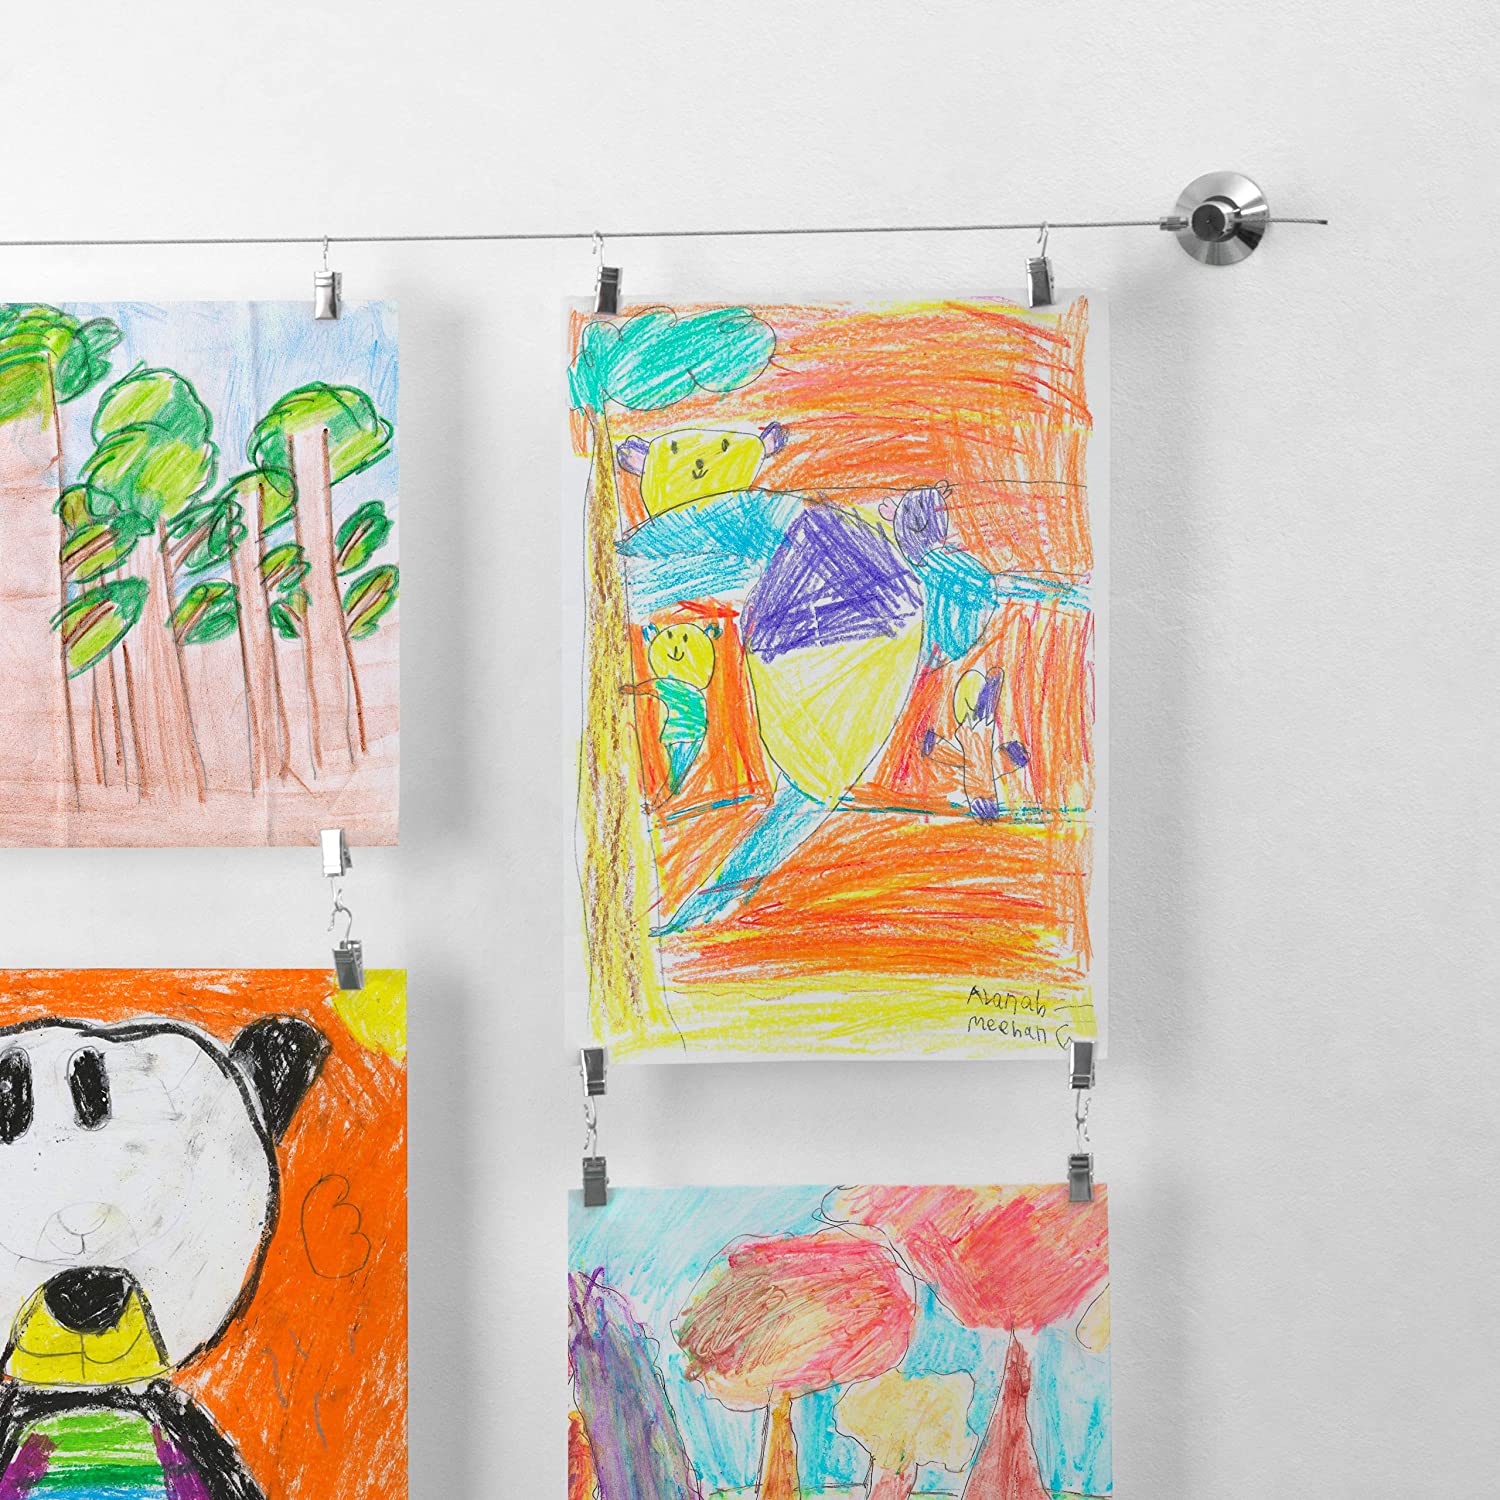 How To Display Kids' Art, Pop Talk